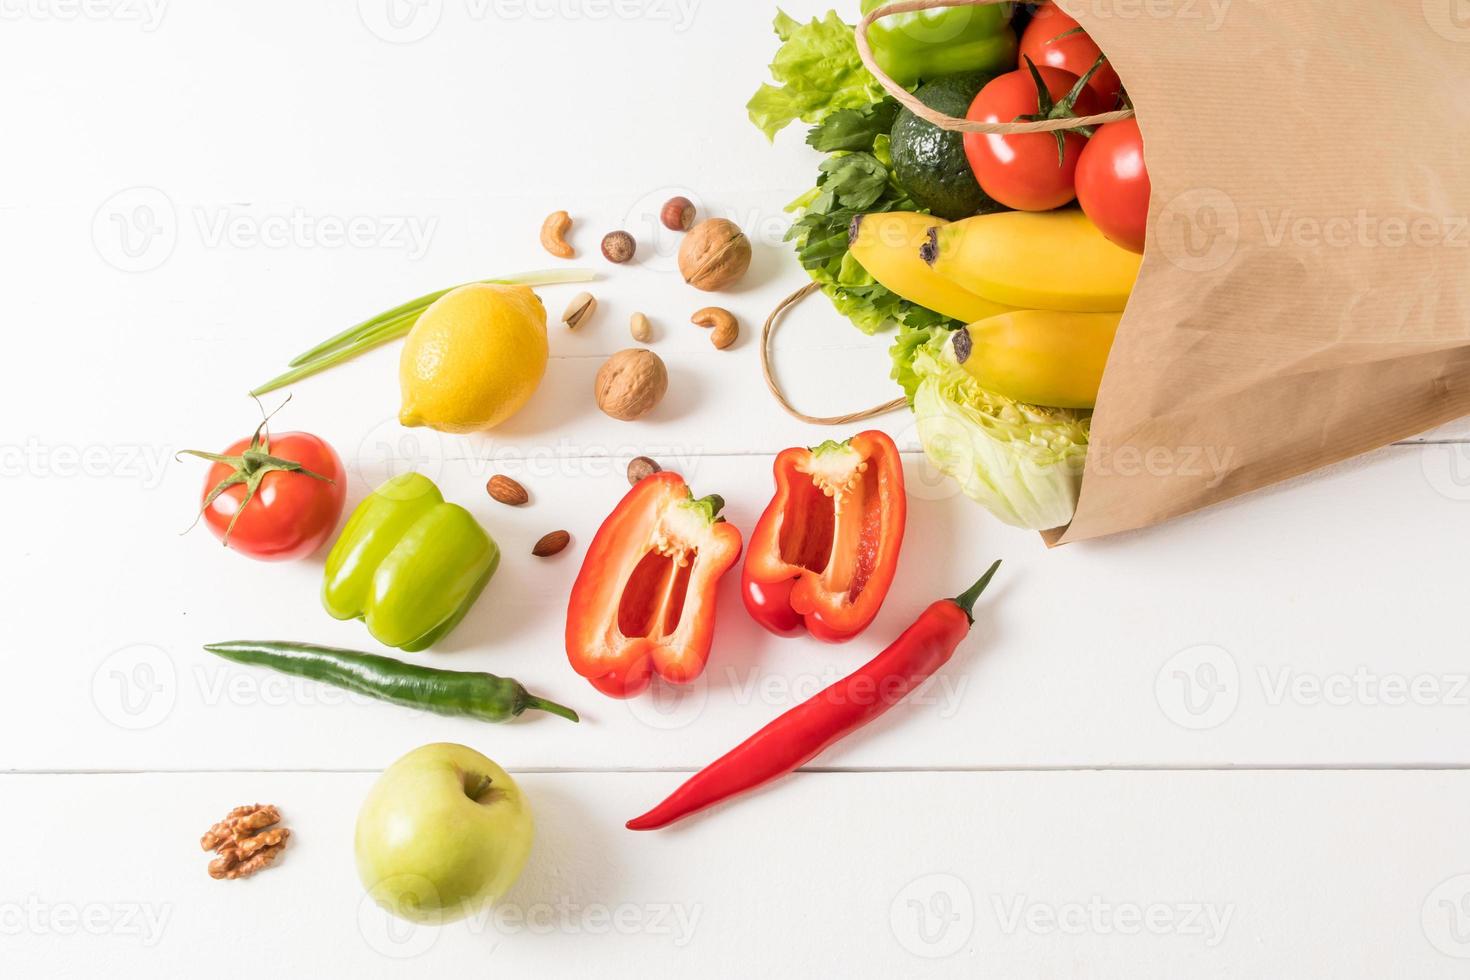 nourriture végétalienne saine dans un sac en papier artisanal sur un fond en bois blanc. le concept du bon choix de produits dans le supermarché. photo